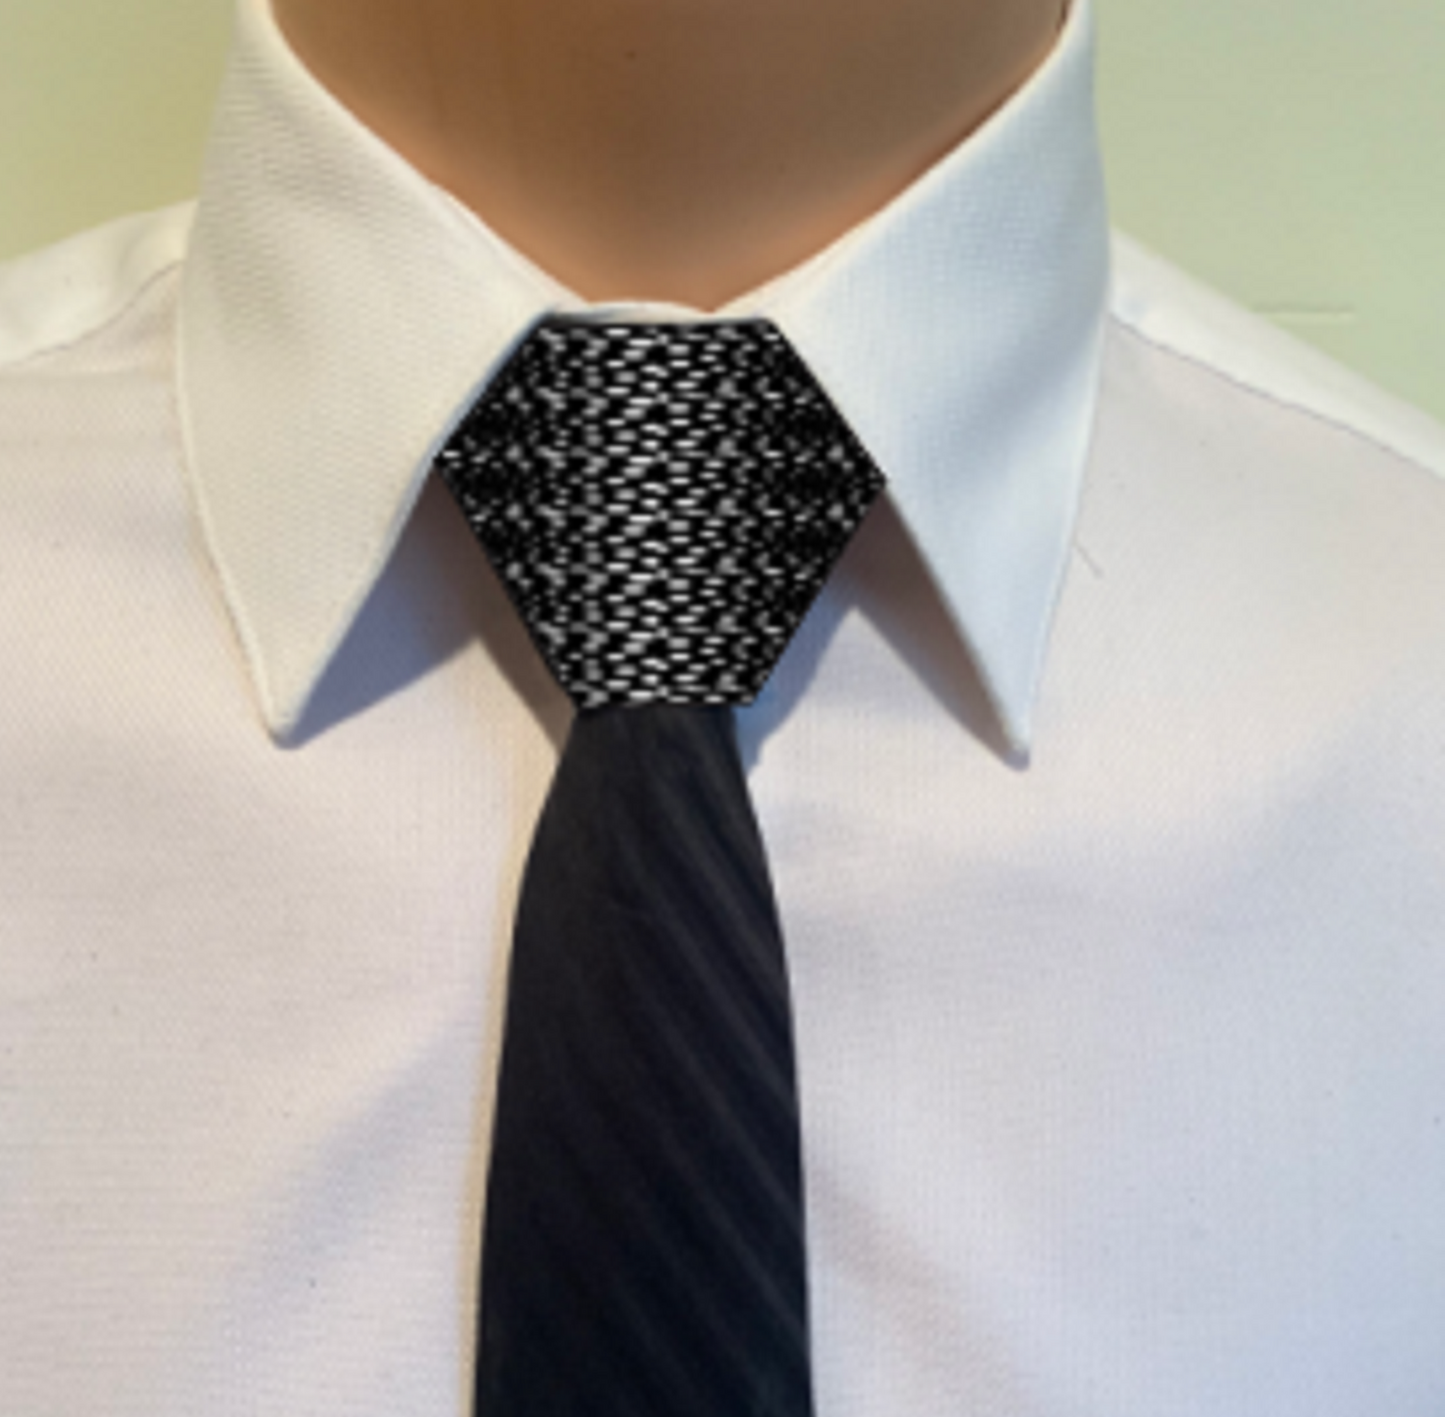 Steel Necktie Knot